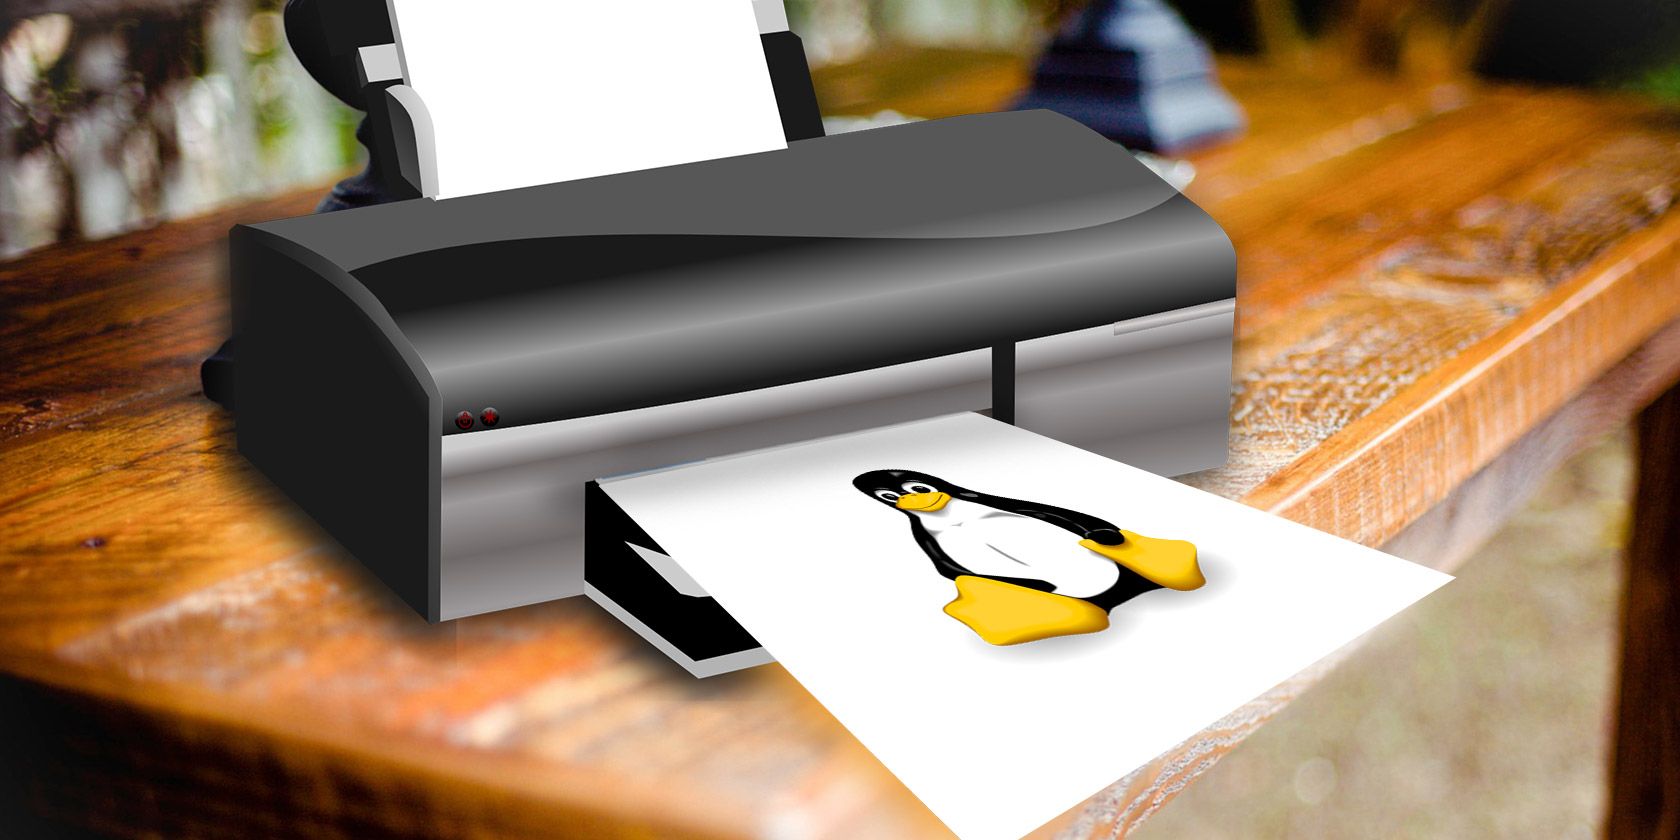 Trovare stampanti compatibili con Linux nel 2022